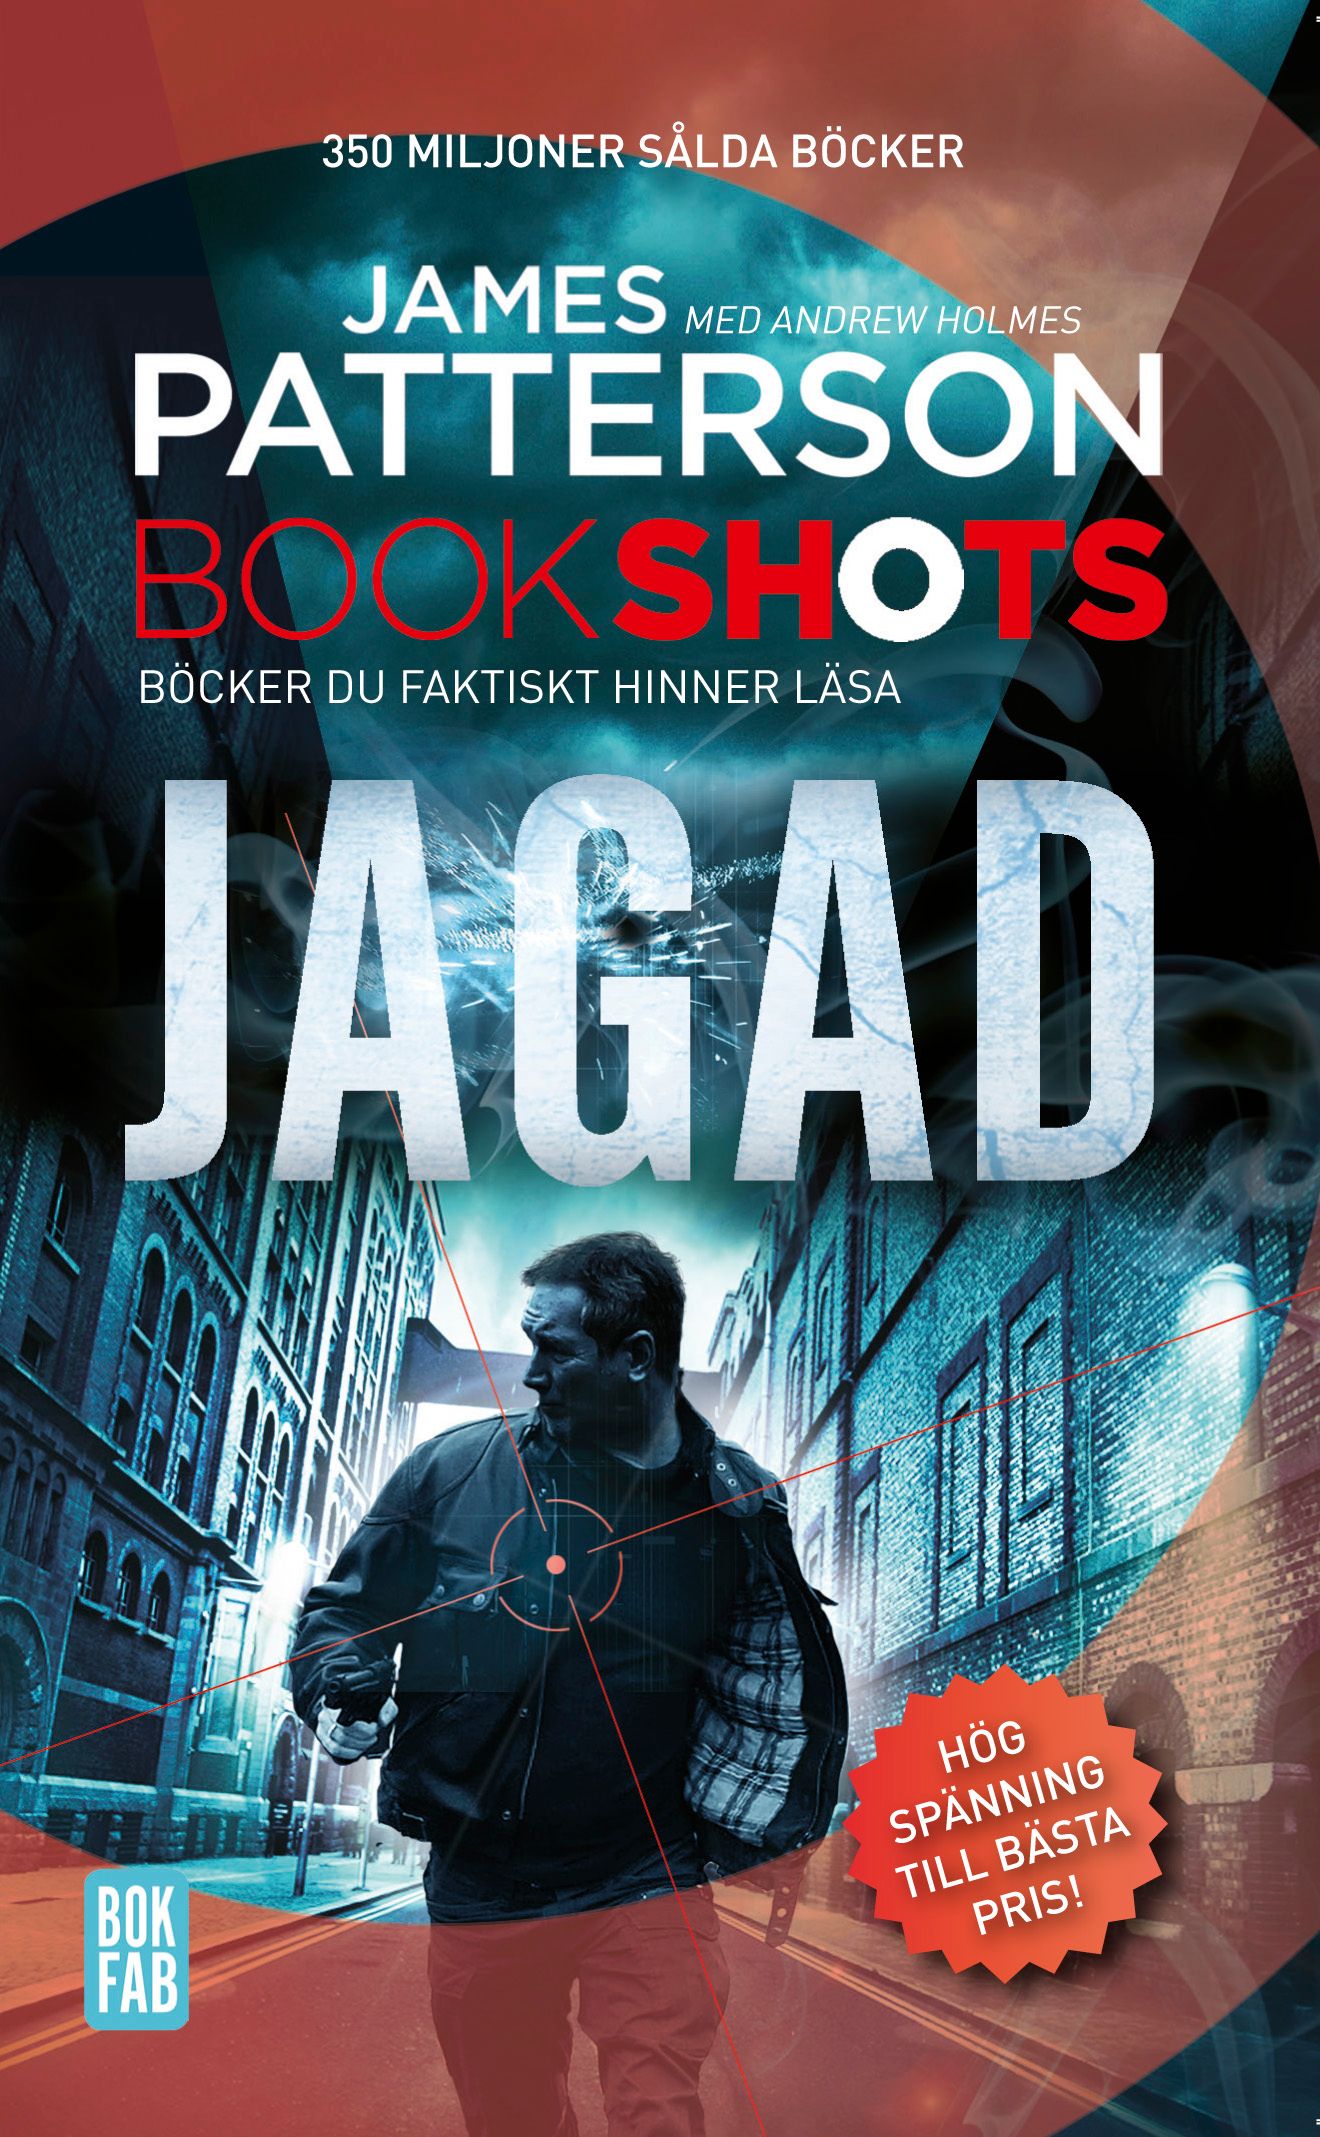 Bookshots: Jagad, e-bog af Andrew Holmes, James Patterson